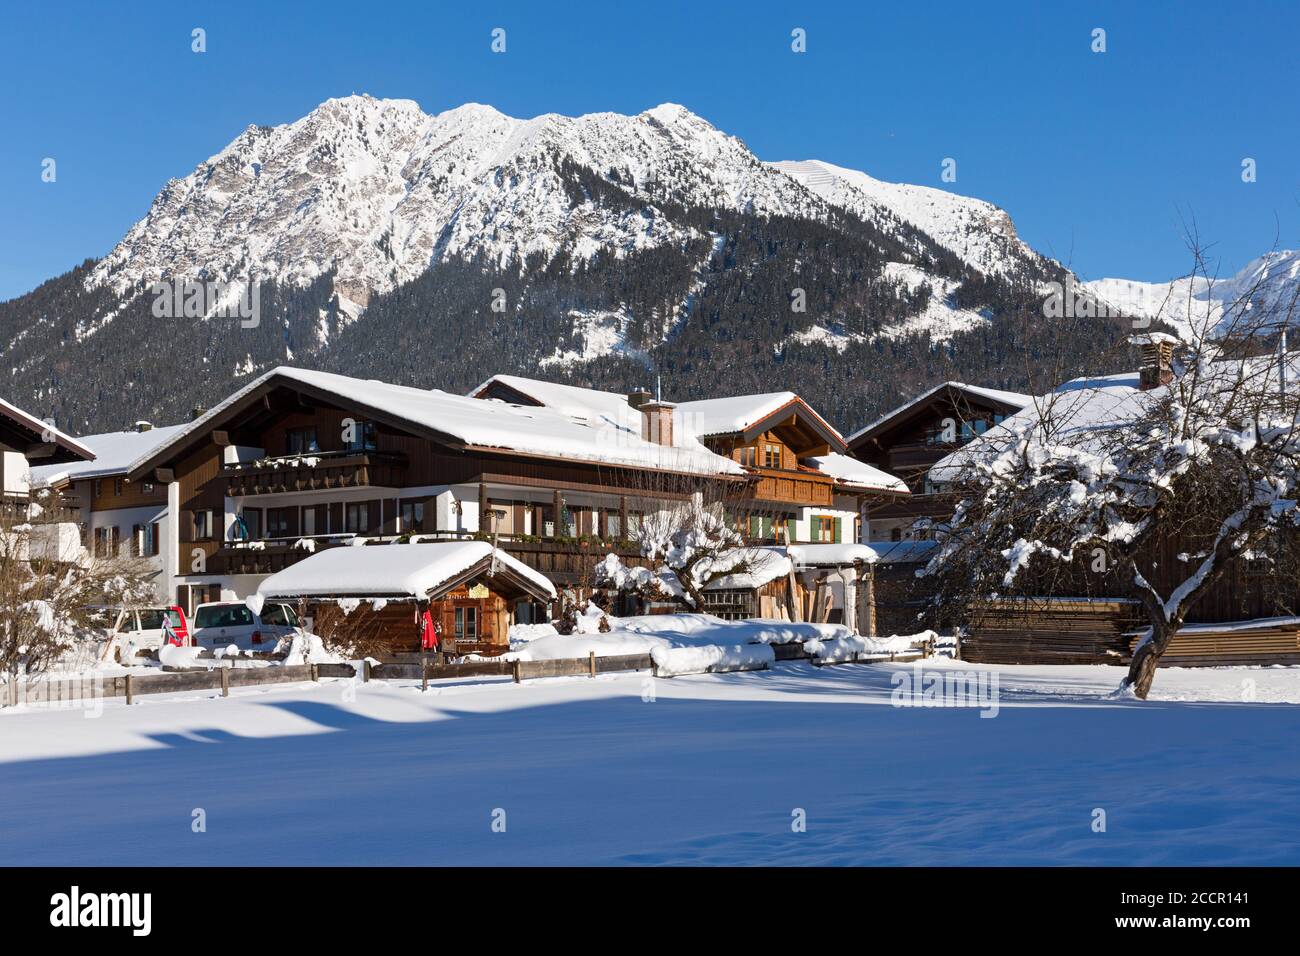 Wohnhäuser, Berge, verschneit, Oberstdorf, Allgäuer Alpen Foto Stock